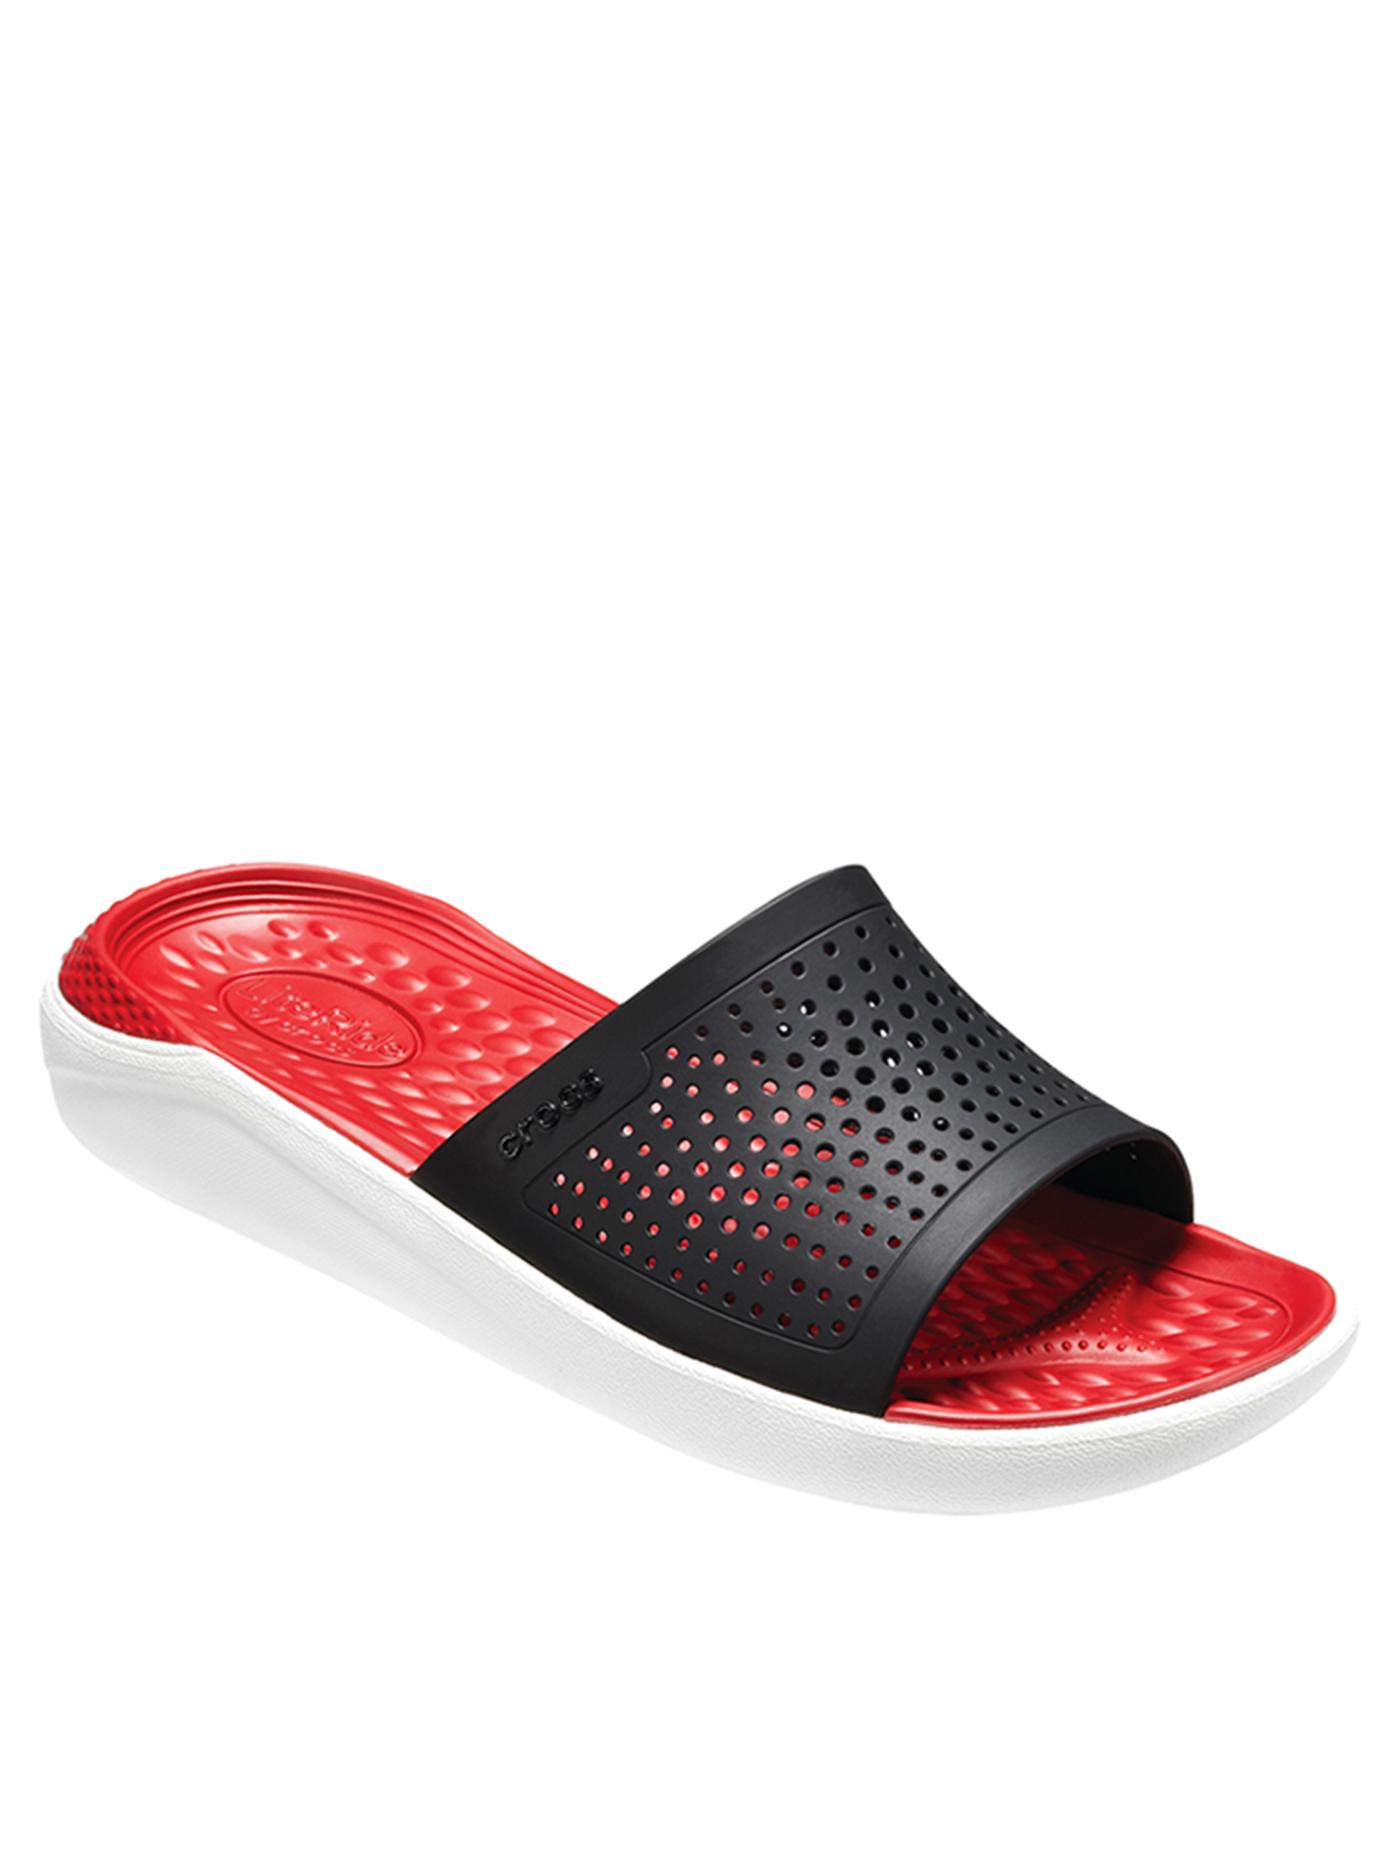 CROCS รองเท้าแตะแบบสวมสำหรับผู้ใหญ่ รุ่น Literide Slide ไซส์ M7/W9 สีแดง-ขาว